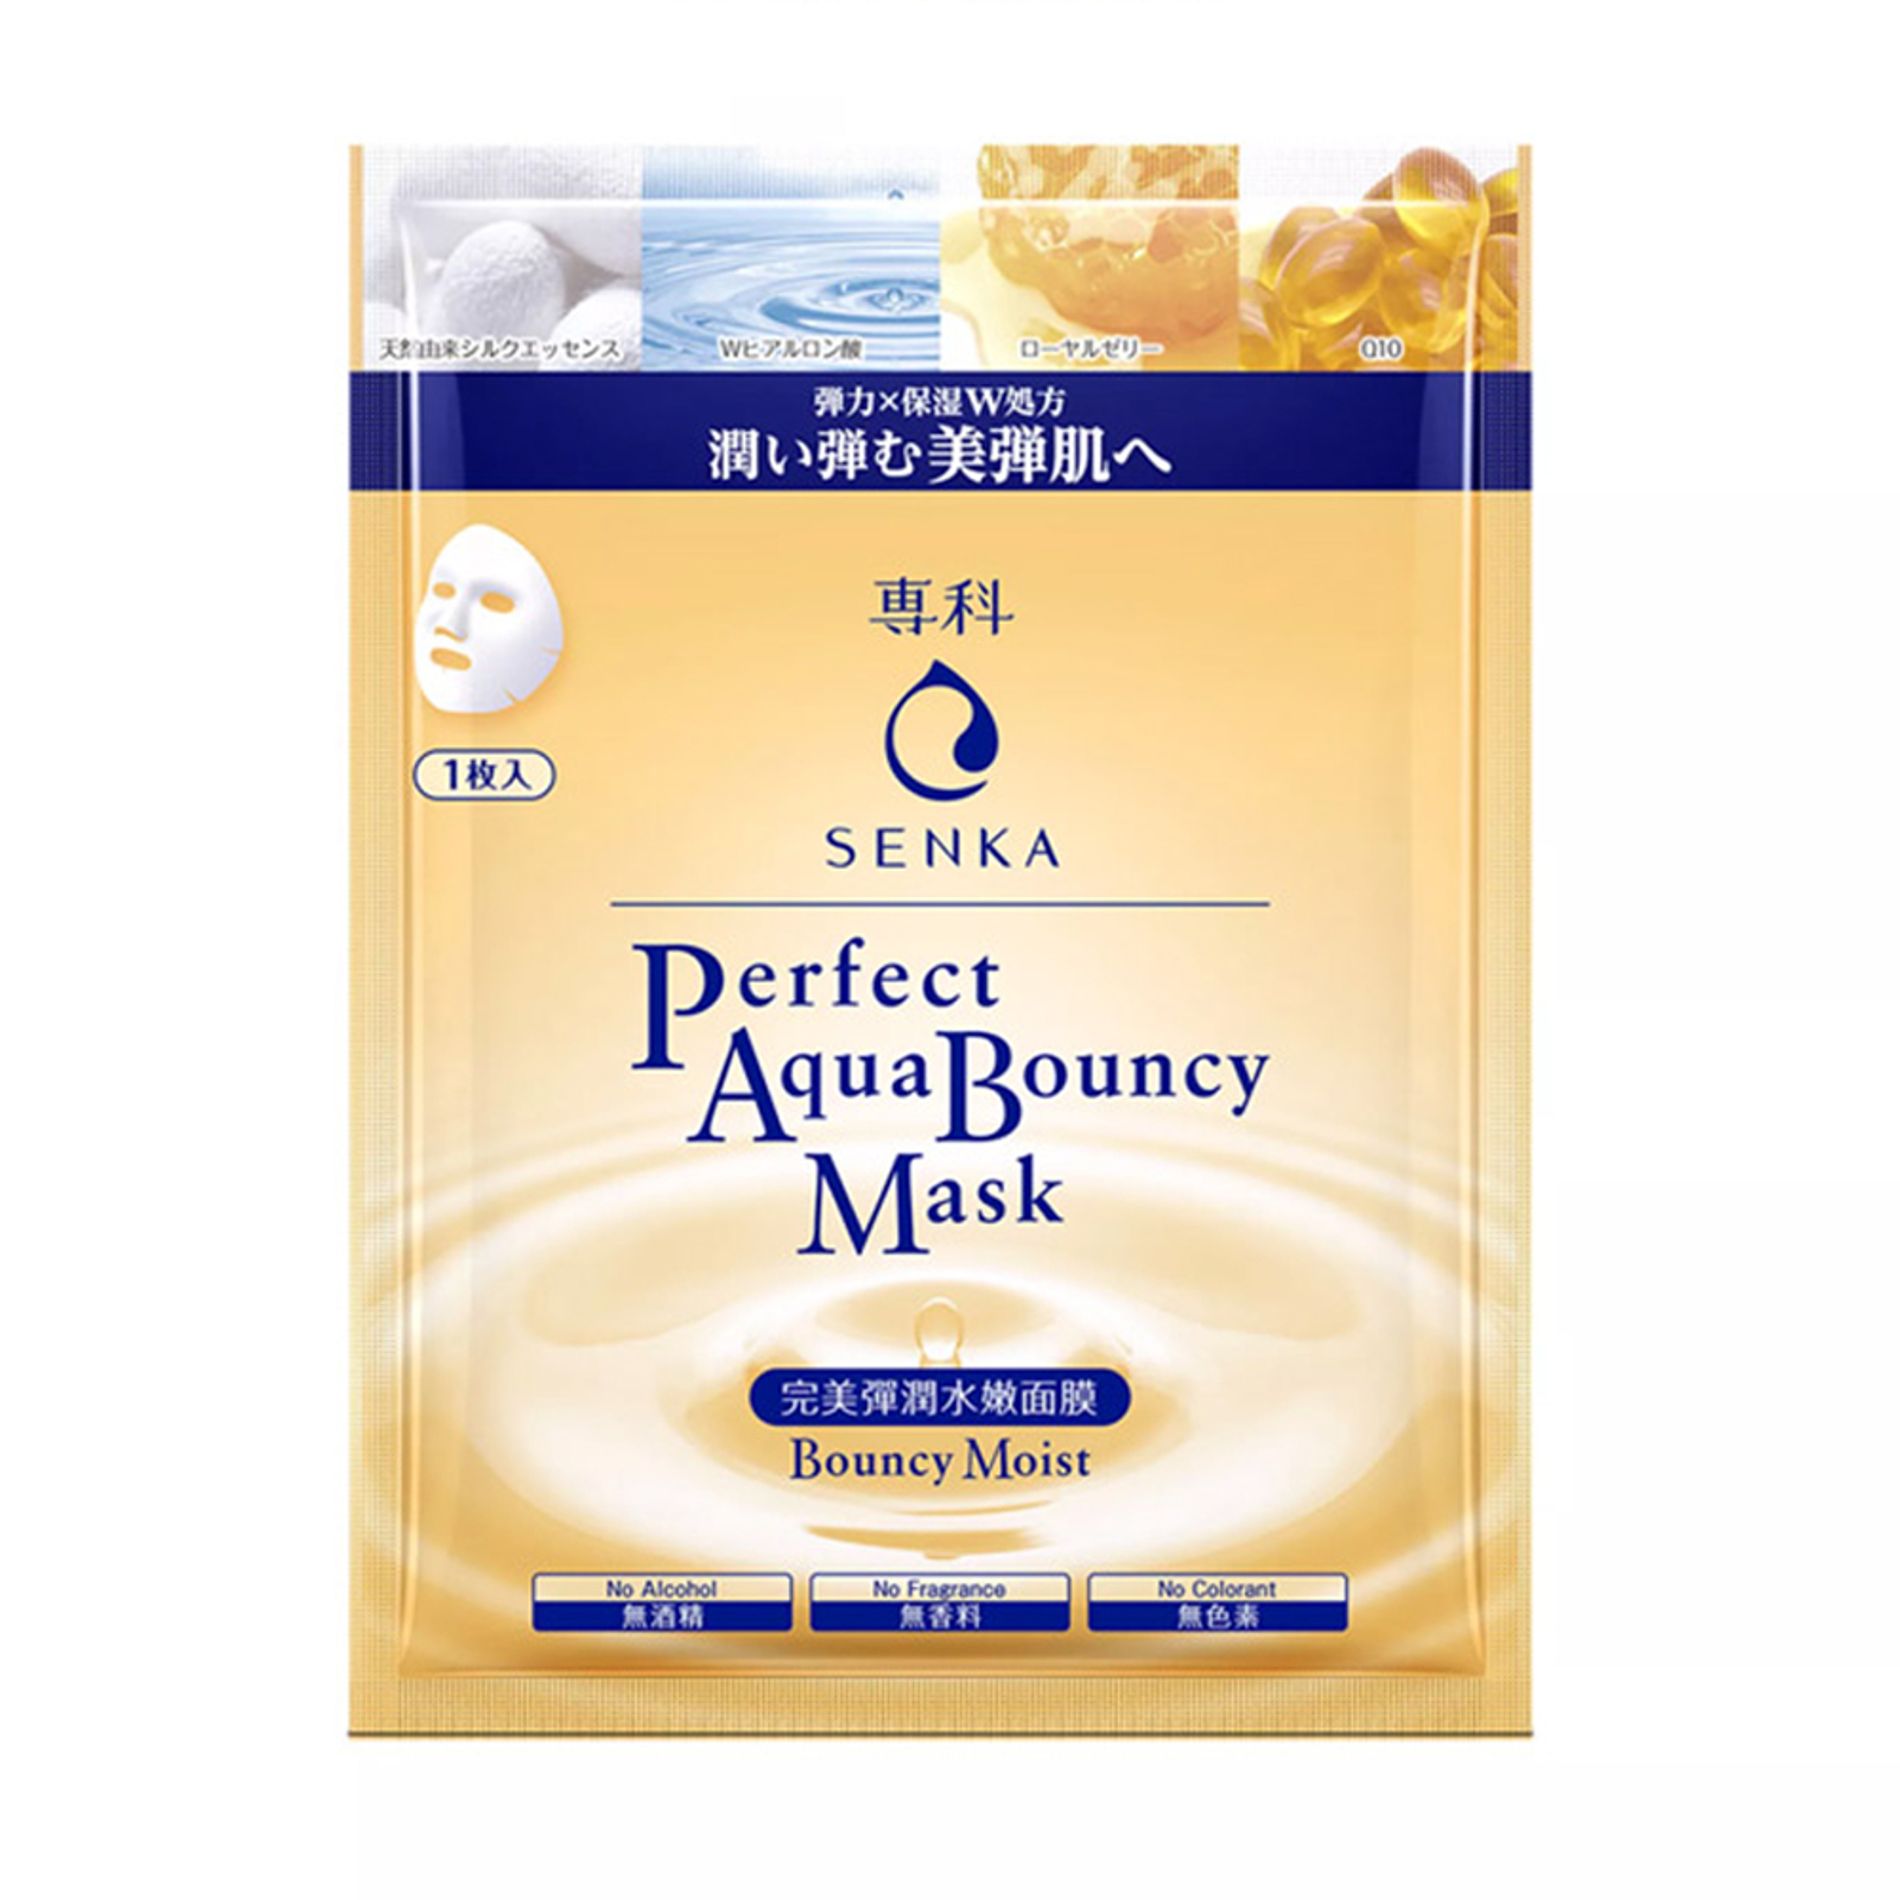 mat-na-chong-lao-hoa-cap-am-senka-perfect-aqua-bouncy-moist-mask-25ml-2